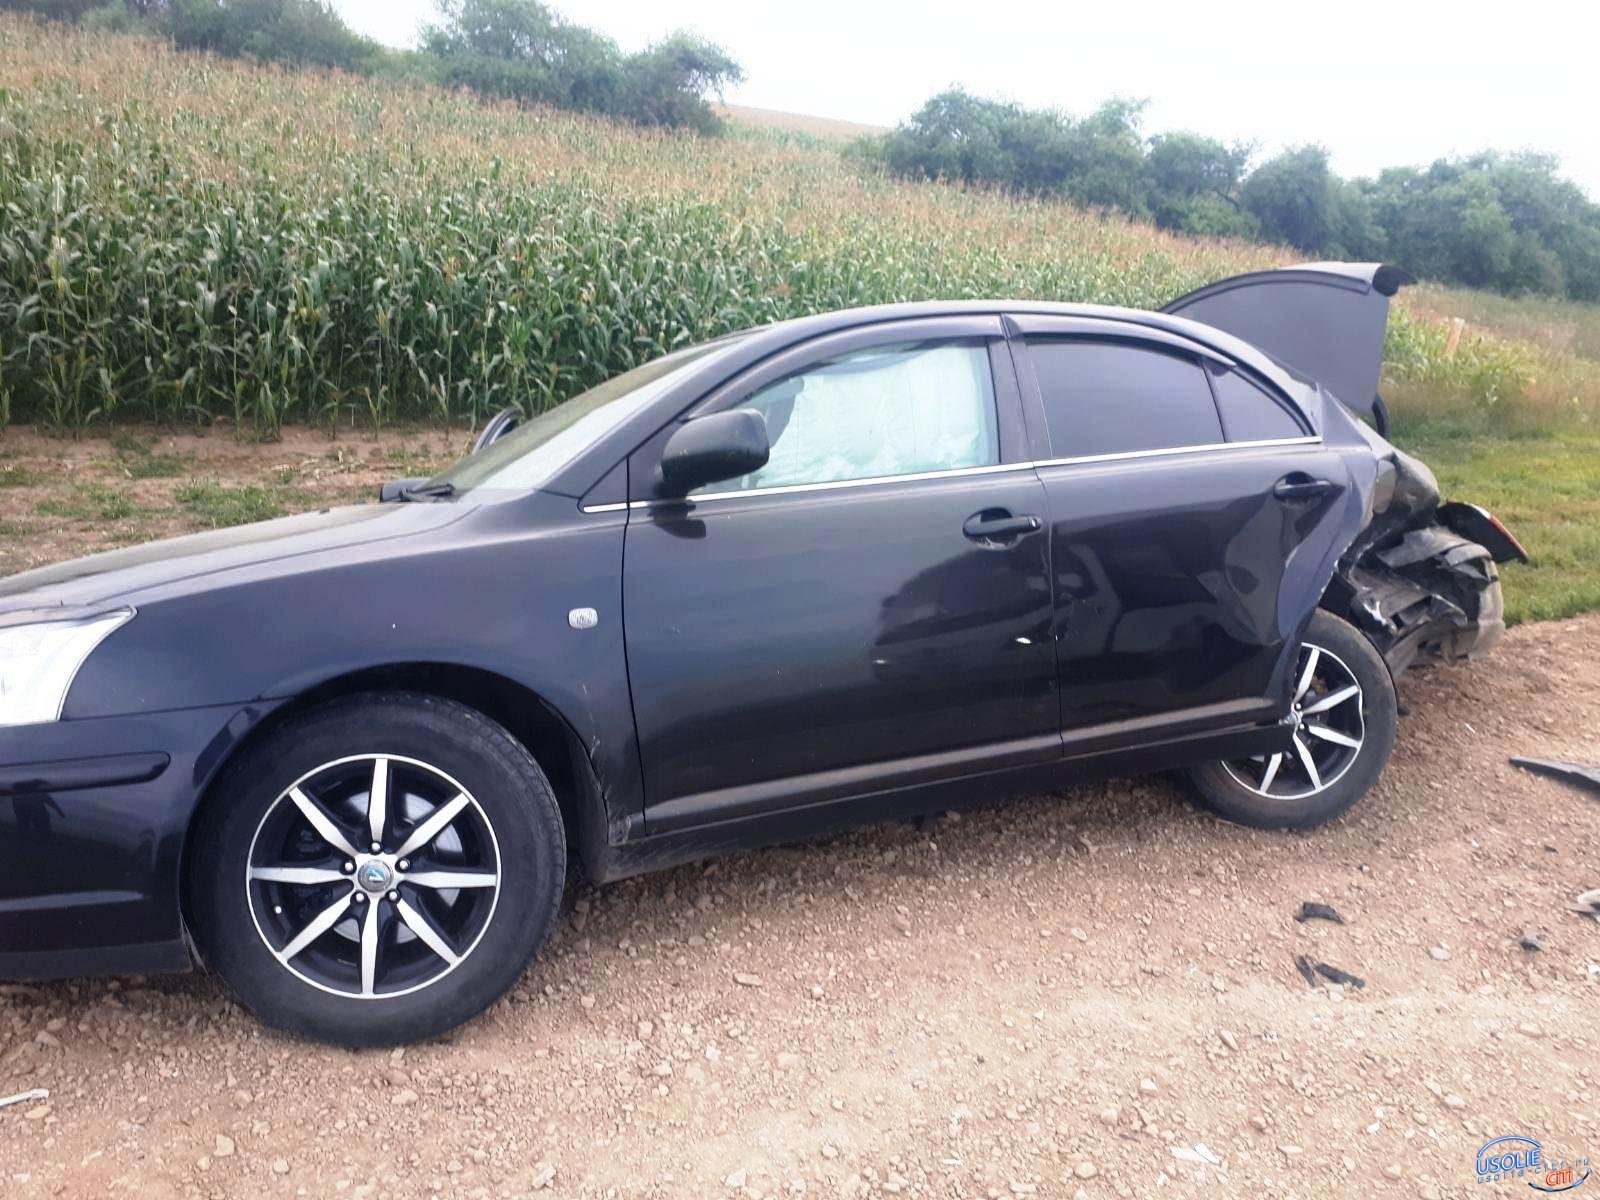 От ошибки 61-летнего водителя в Усольском районе пострадала пенсионерка